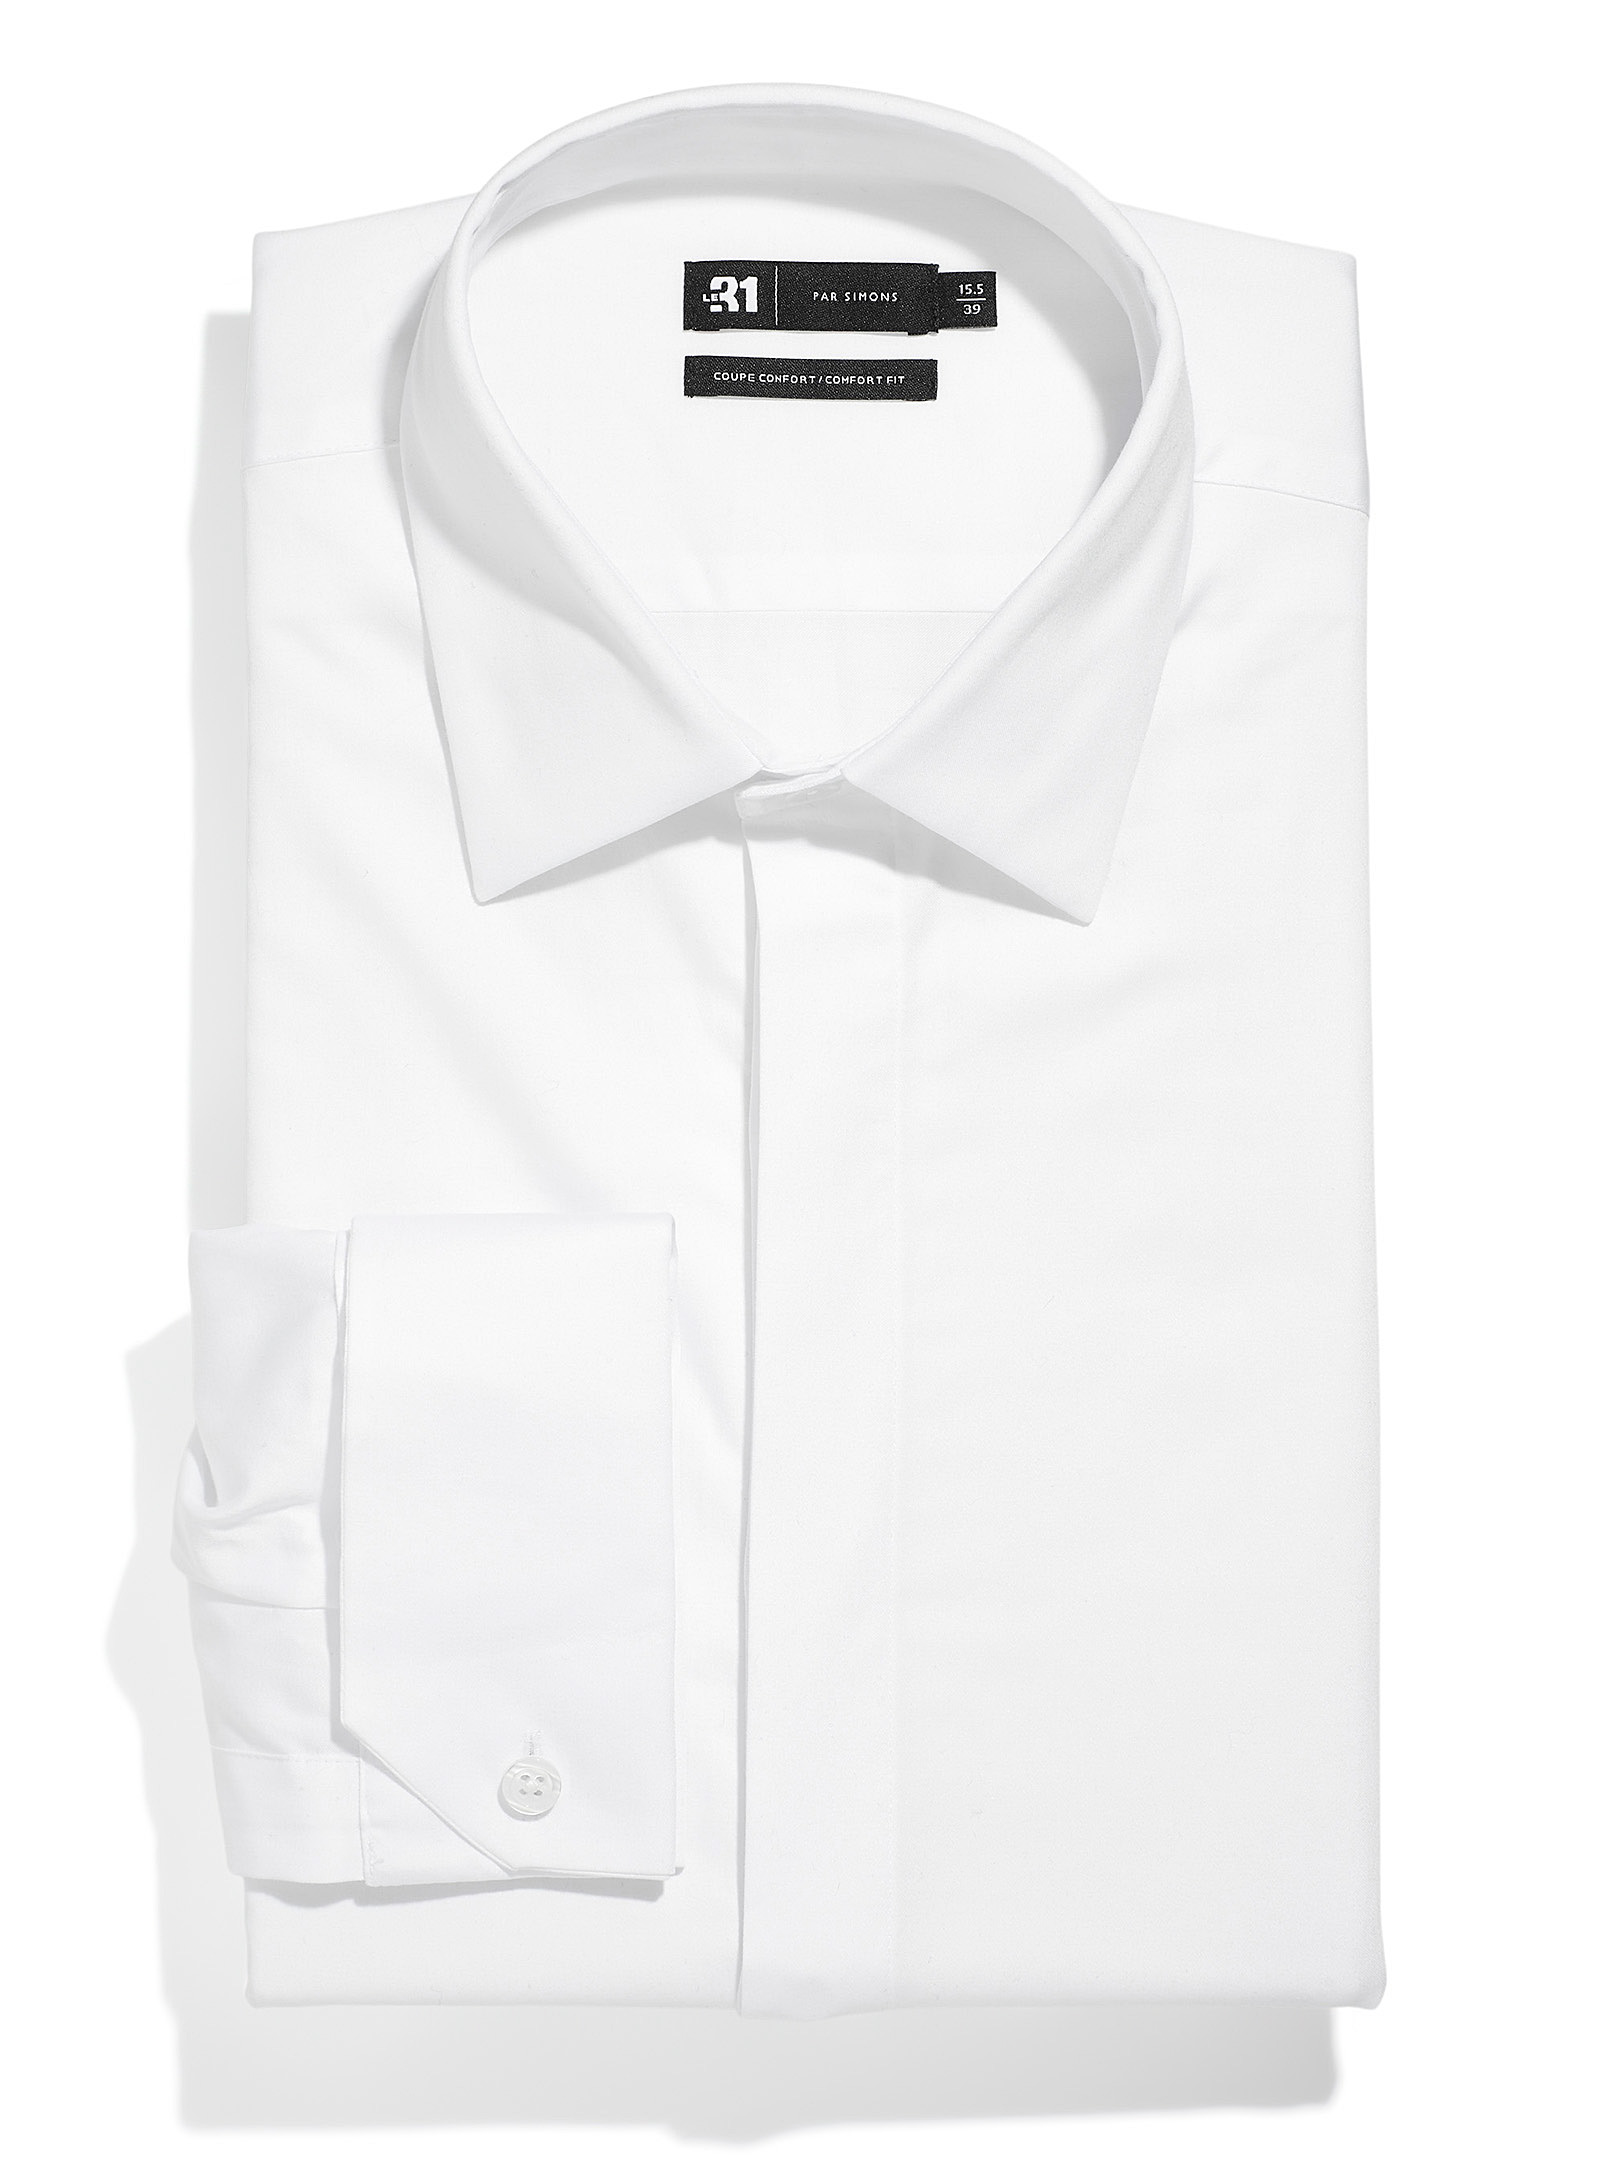 Le 31 - La chemise blanche poignets français Coupe confort